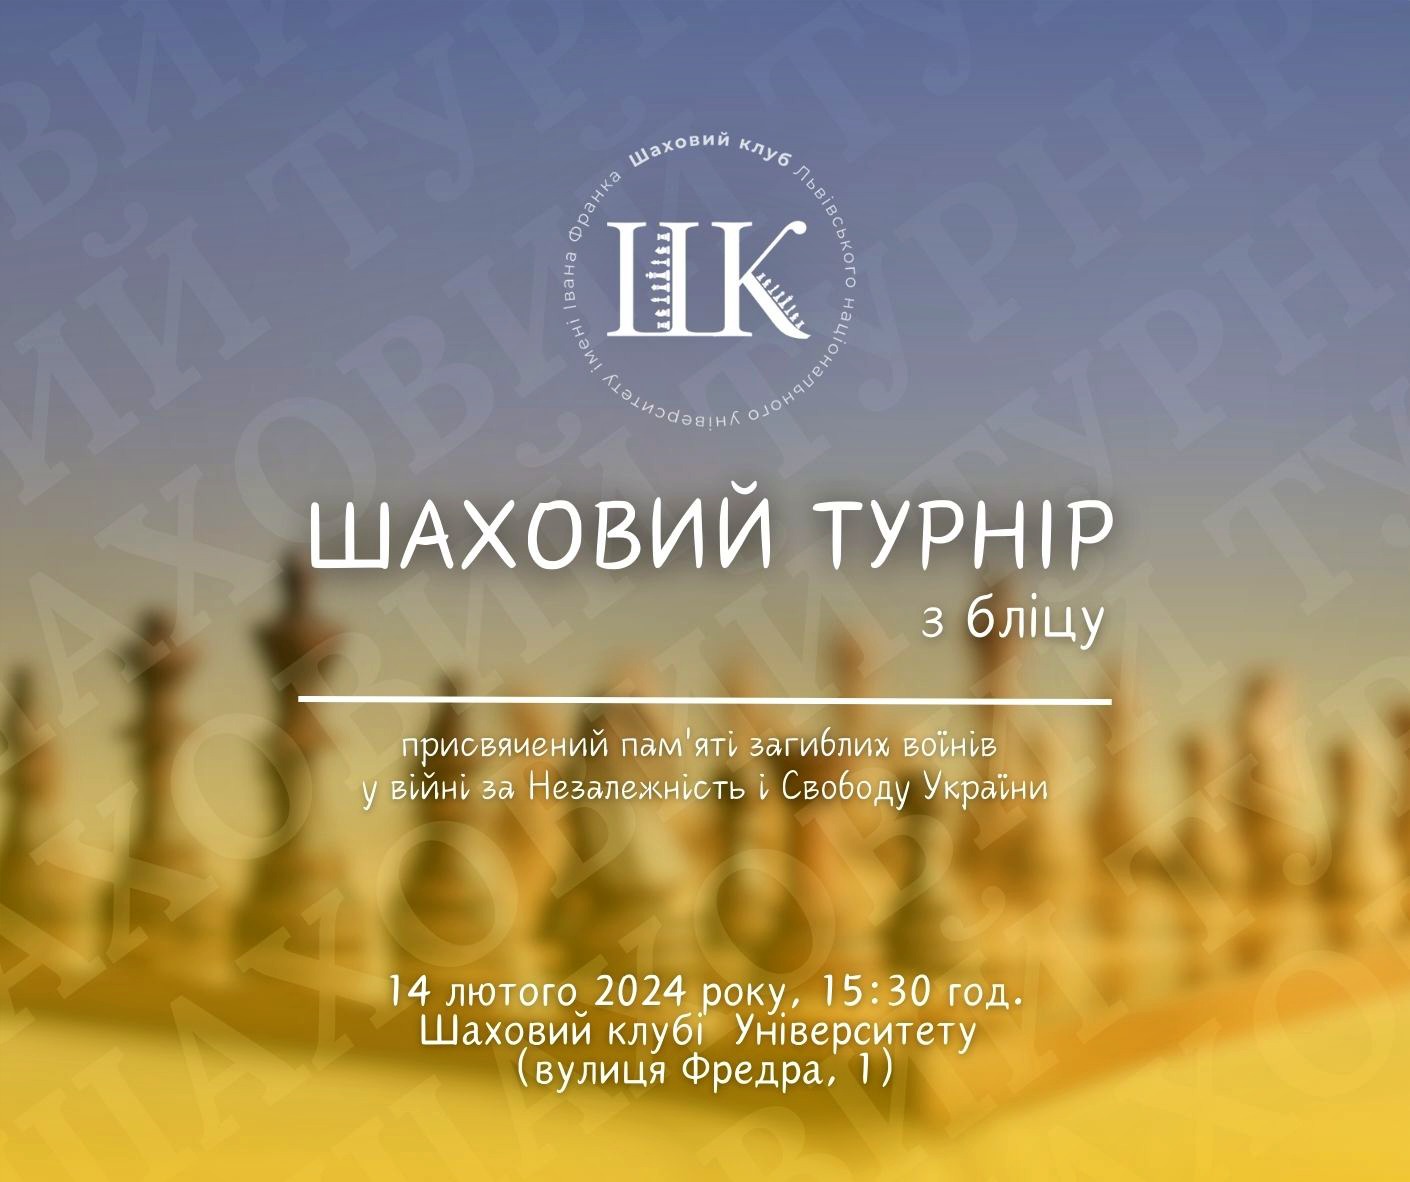 Шаховий турнір з бліцу, присвячений пам’яті загиблих воїнів у війні за Незалежність і Свободу України